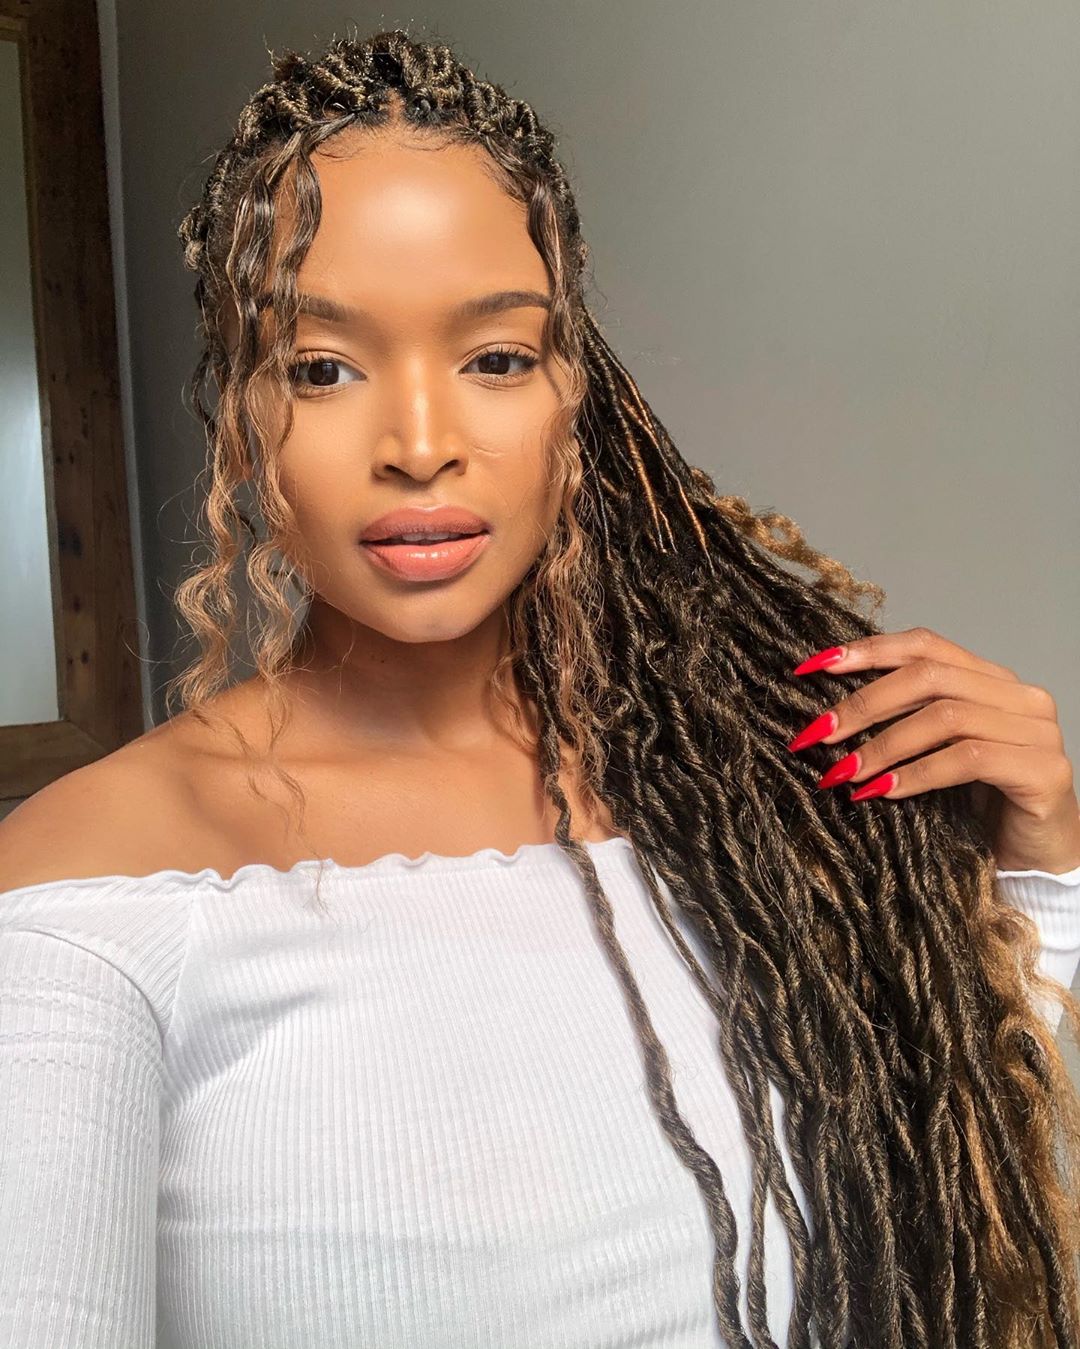 Ayanda Thabethe's spicy photo sets social media alight | News365.co.za